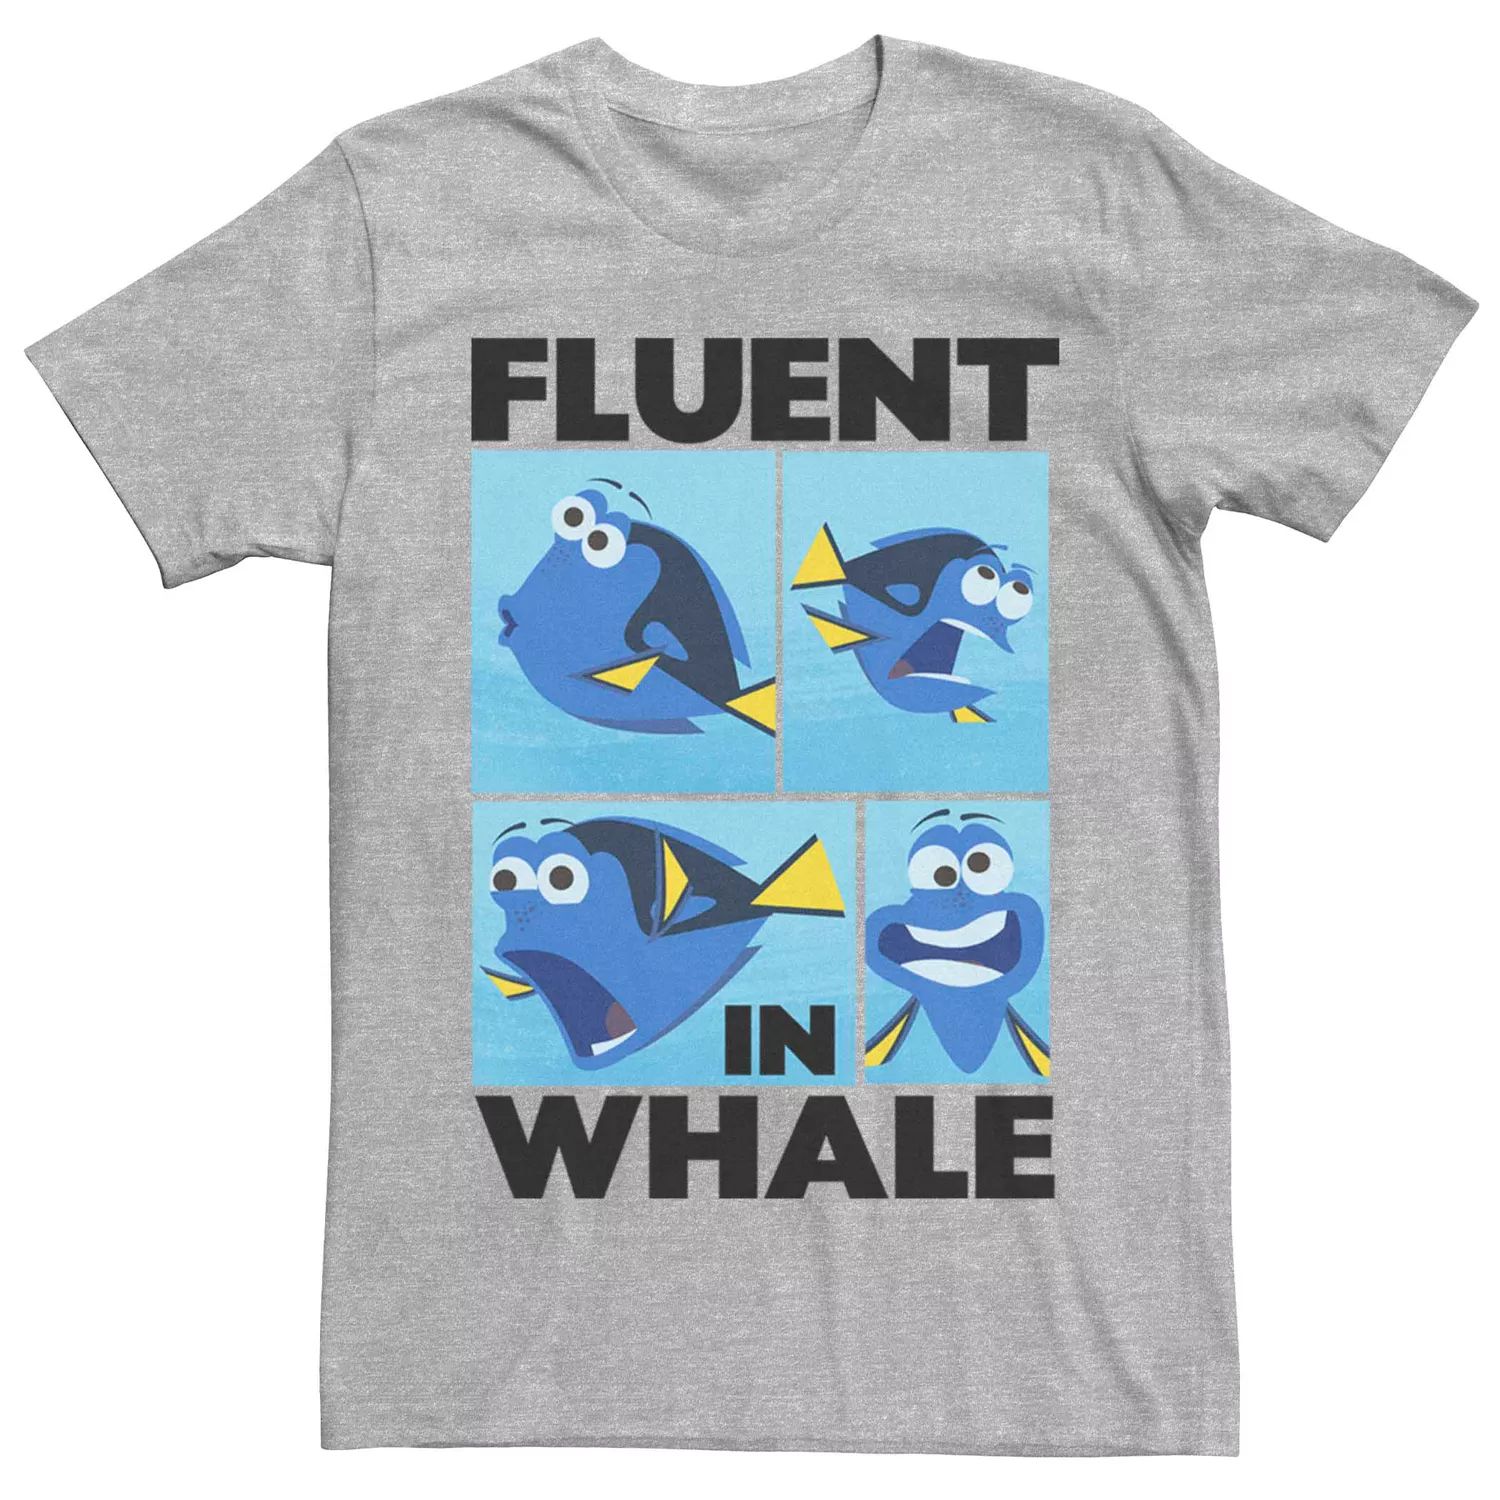 Мужская футболка Disney Pixar Finding Dory Fluent в китовой футболке Licensed Character